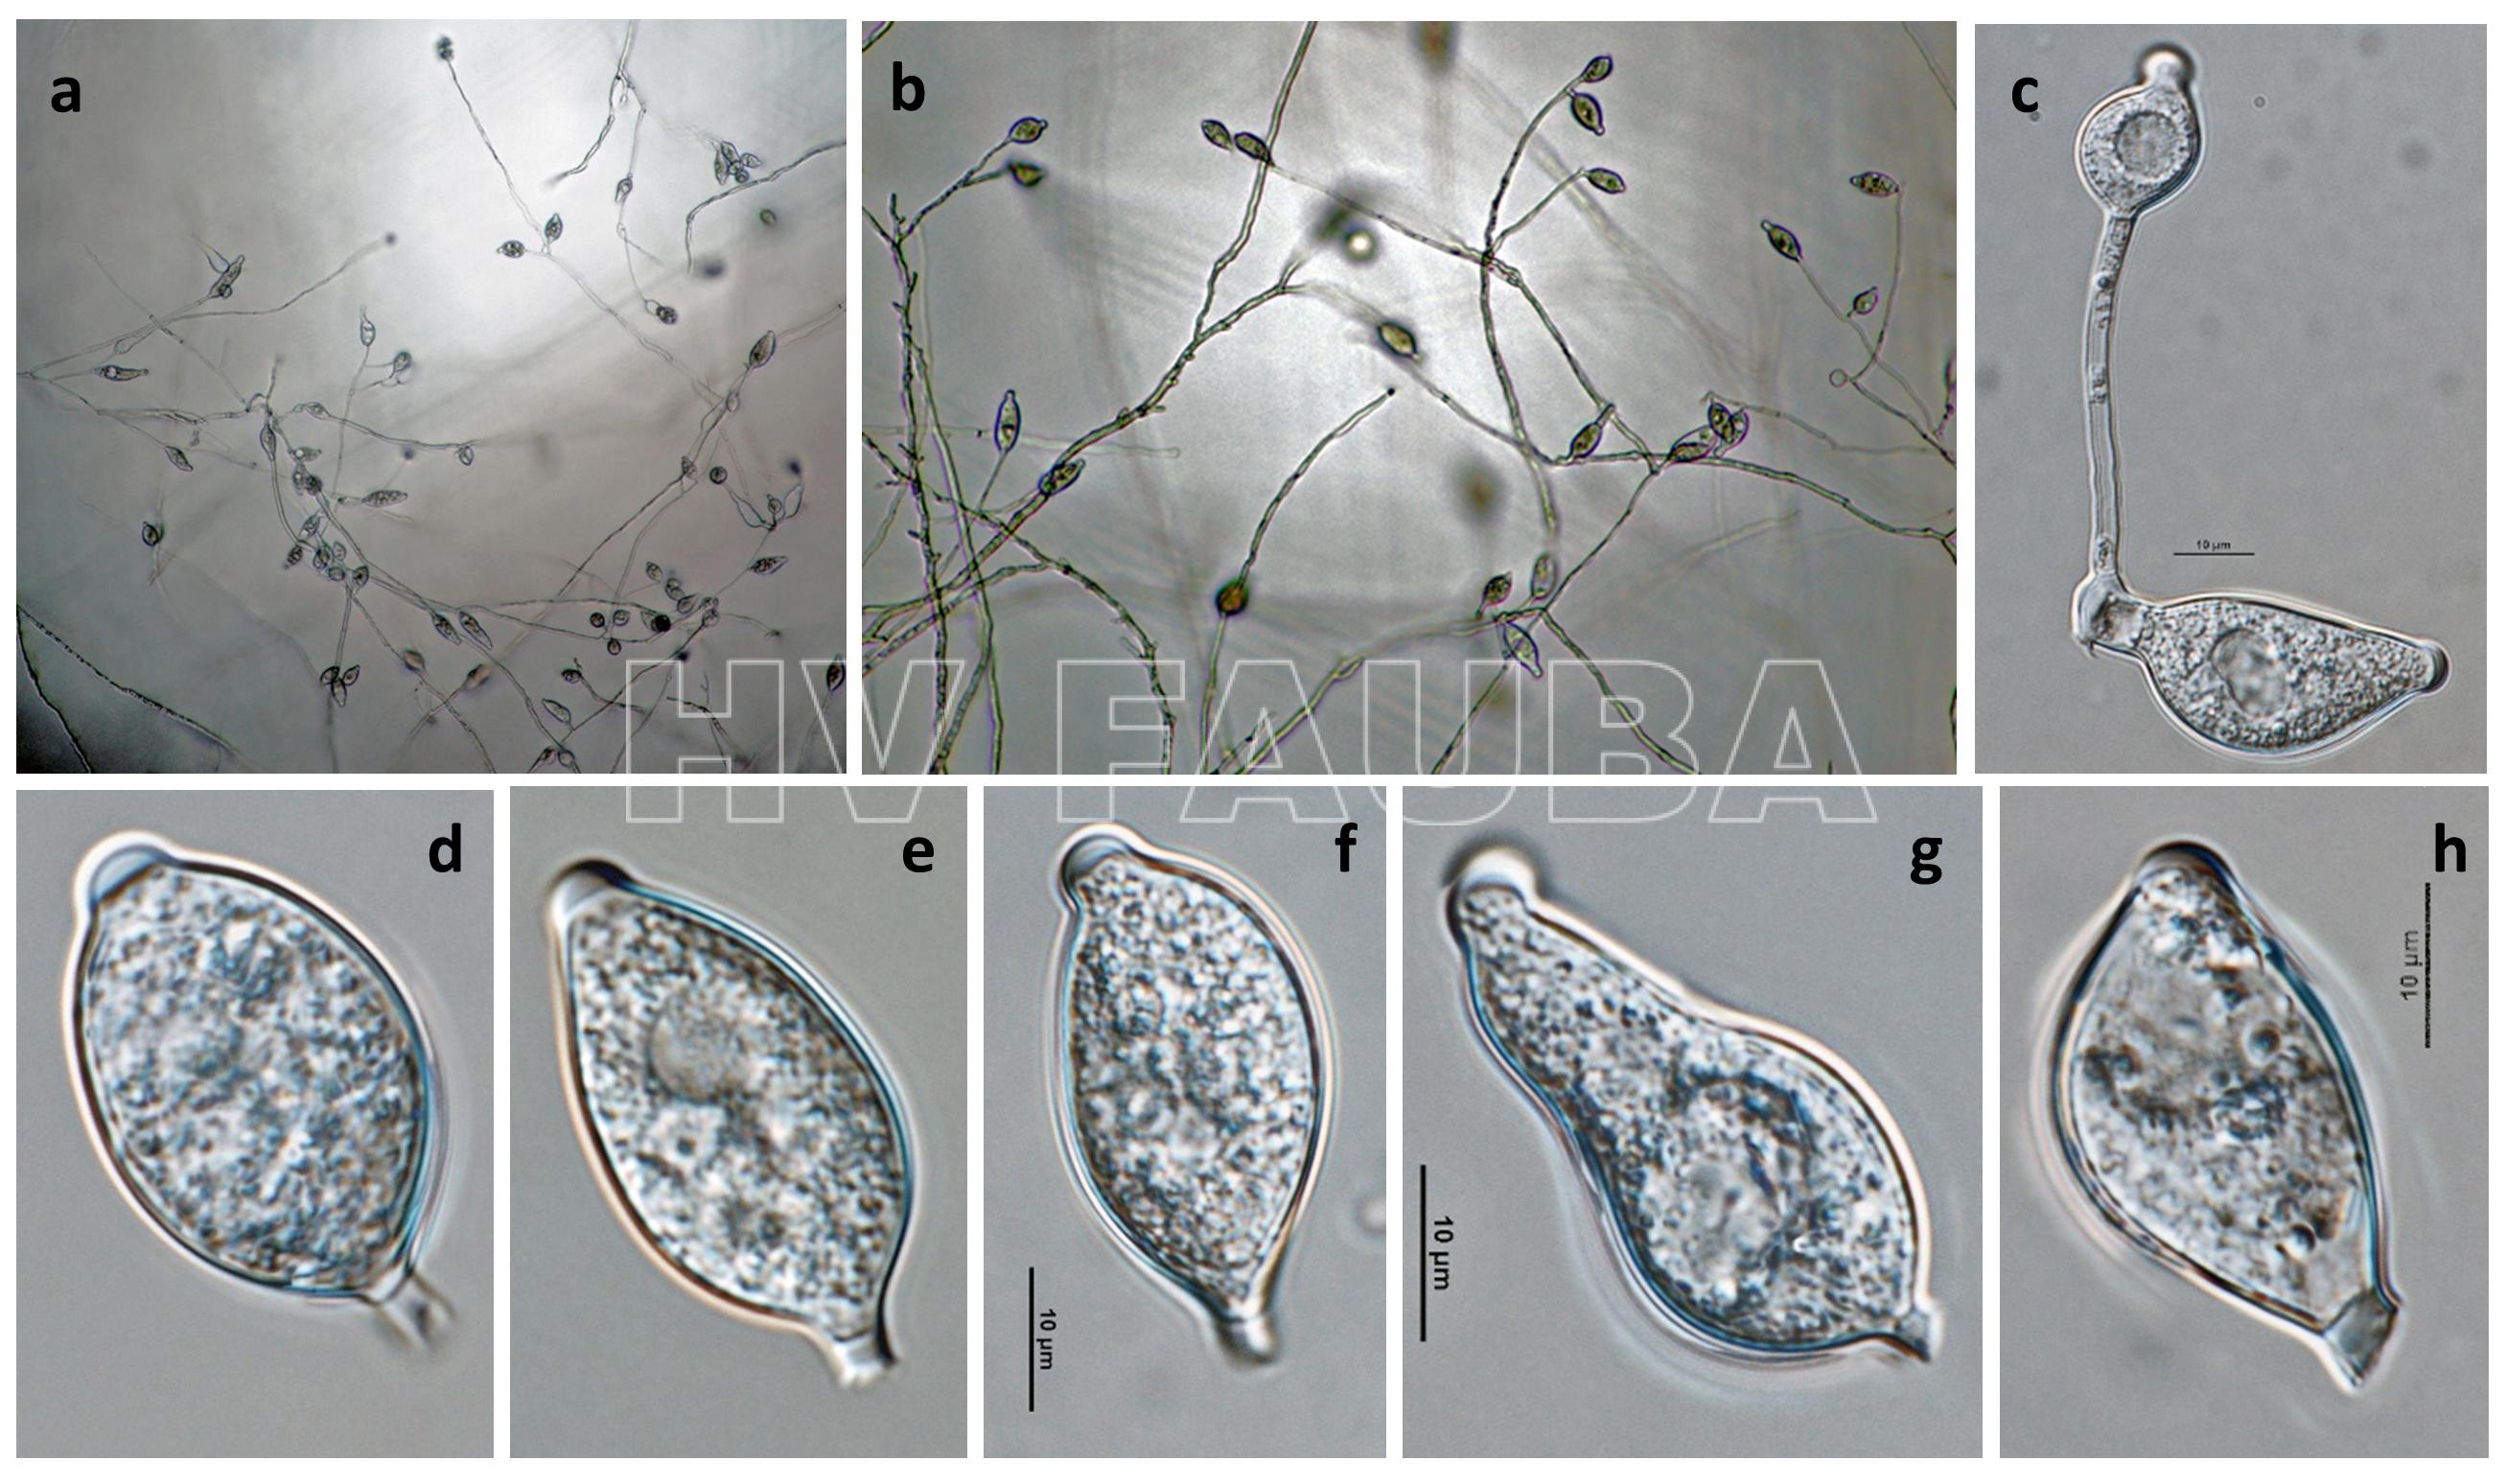 Phytophthora infestans (fase asexual): (a, b) esporangios en esporangióforos; (c) germinación externa de esporangio; (d – h) esporangios papilados con pedicelos cortos y caducos. Autor: Gloria Abad, USDA-APHIS.